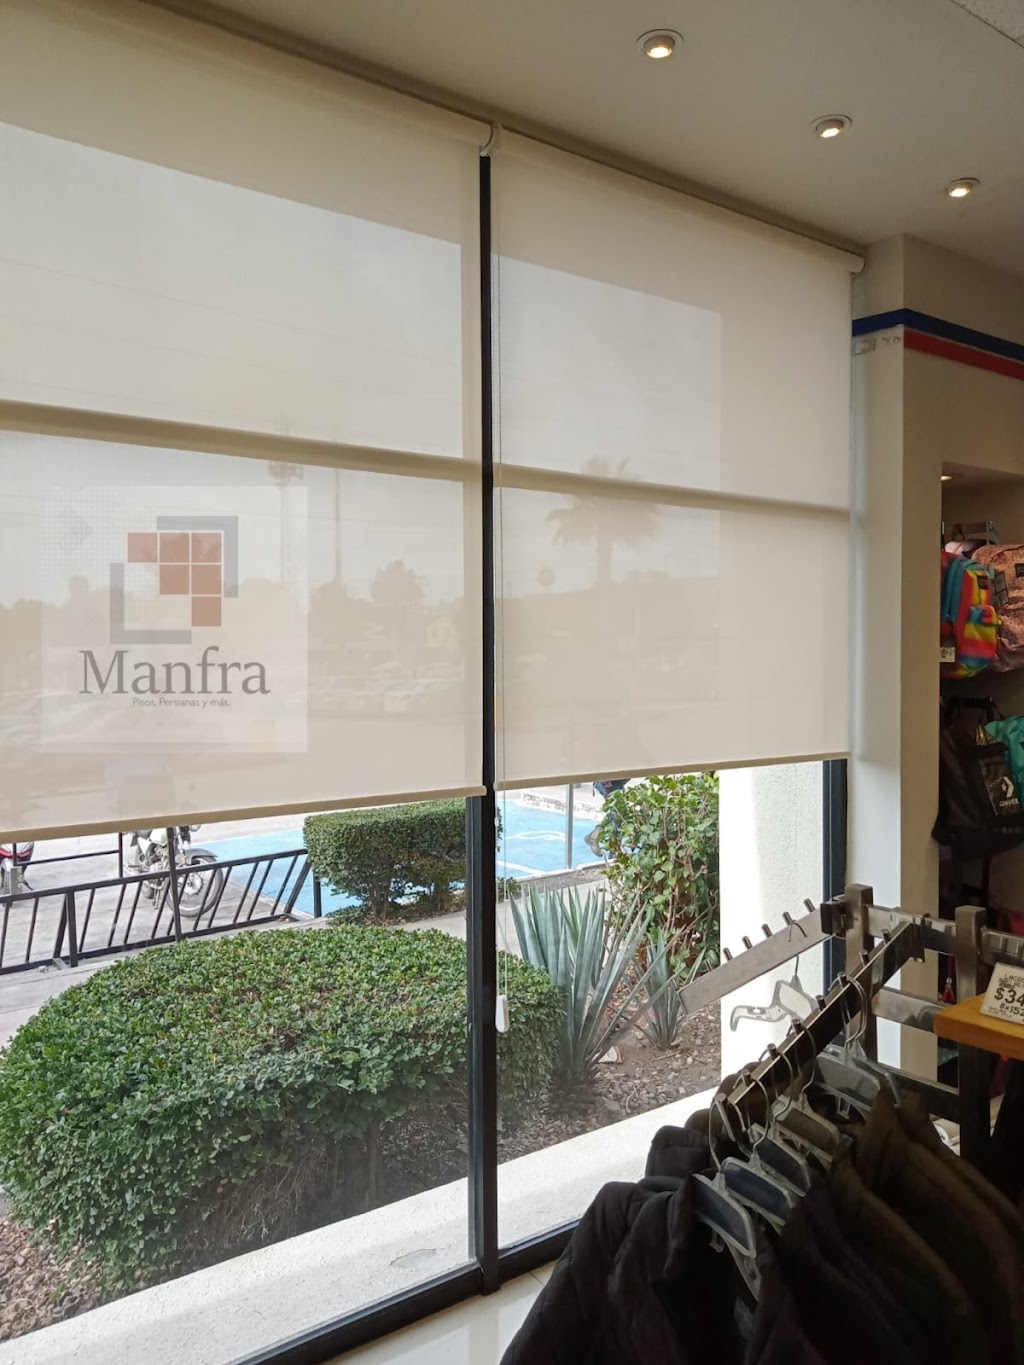 Decoraciones Manfra | Blvd. las Delicias, Hacienda Las Delicias, 22160 Tijuana, B.C., Mexico | Phone: 664 269 2377